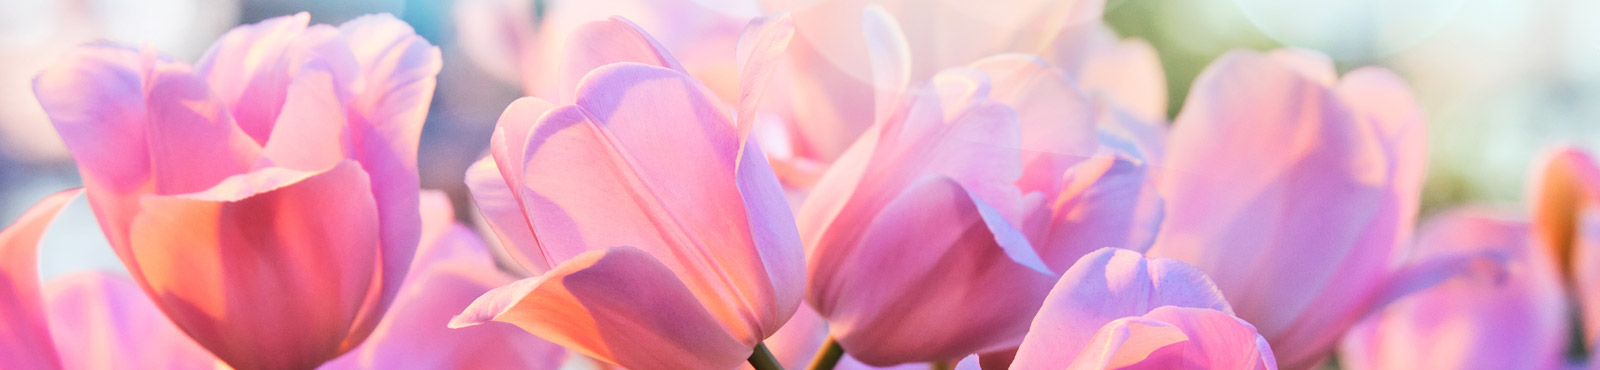 Rosa Tulpen im wunderschönen Licht